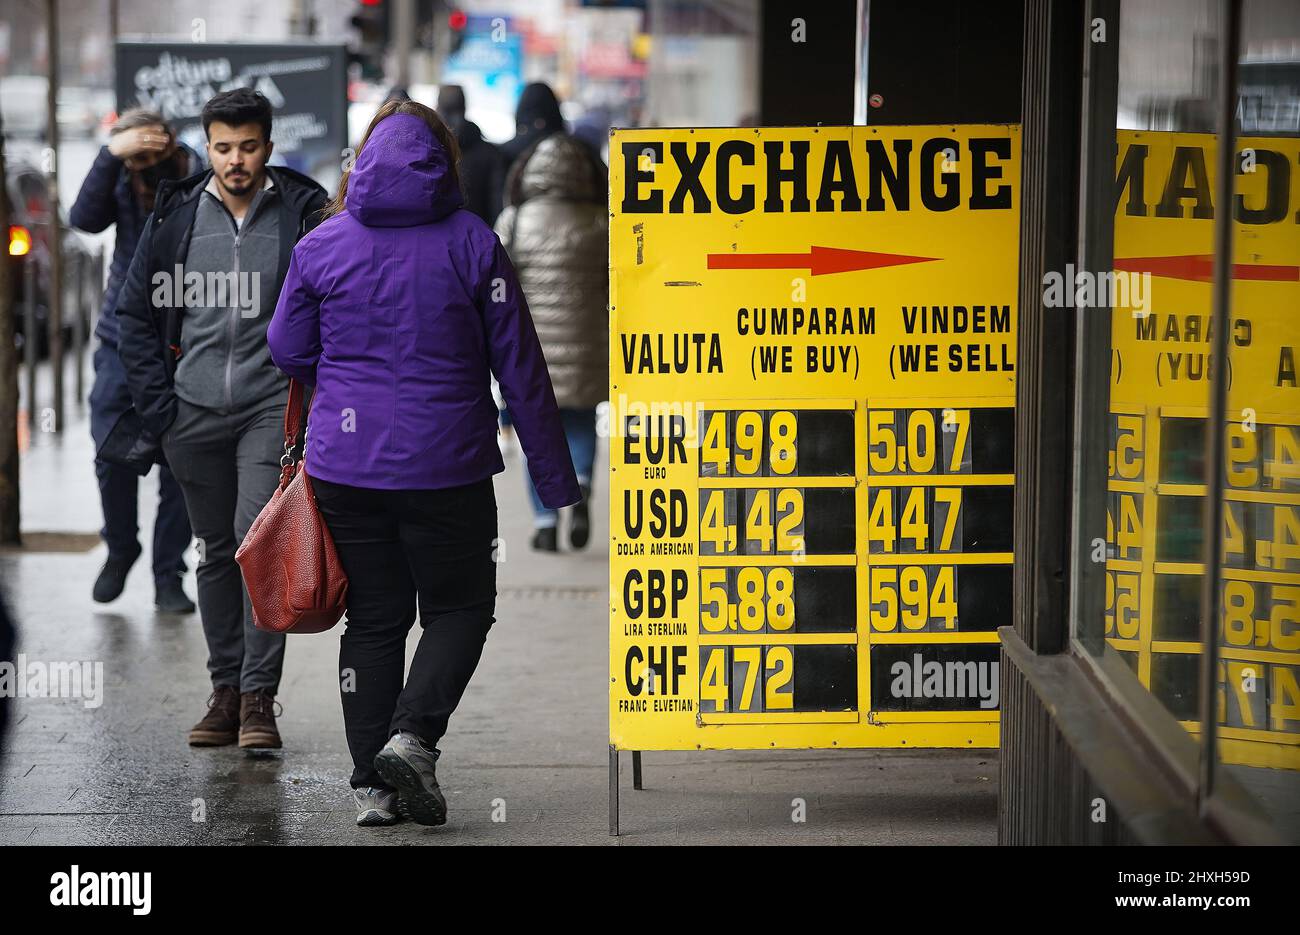 Bukarest, Rumänien - 01. März 2022: Der Wechselkurs des Leu-Euro, der die psychologische Schwelle von 5 lei überschreitet, wird auf einem gelben b angezeigt Stockfoto